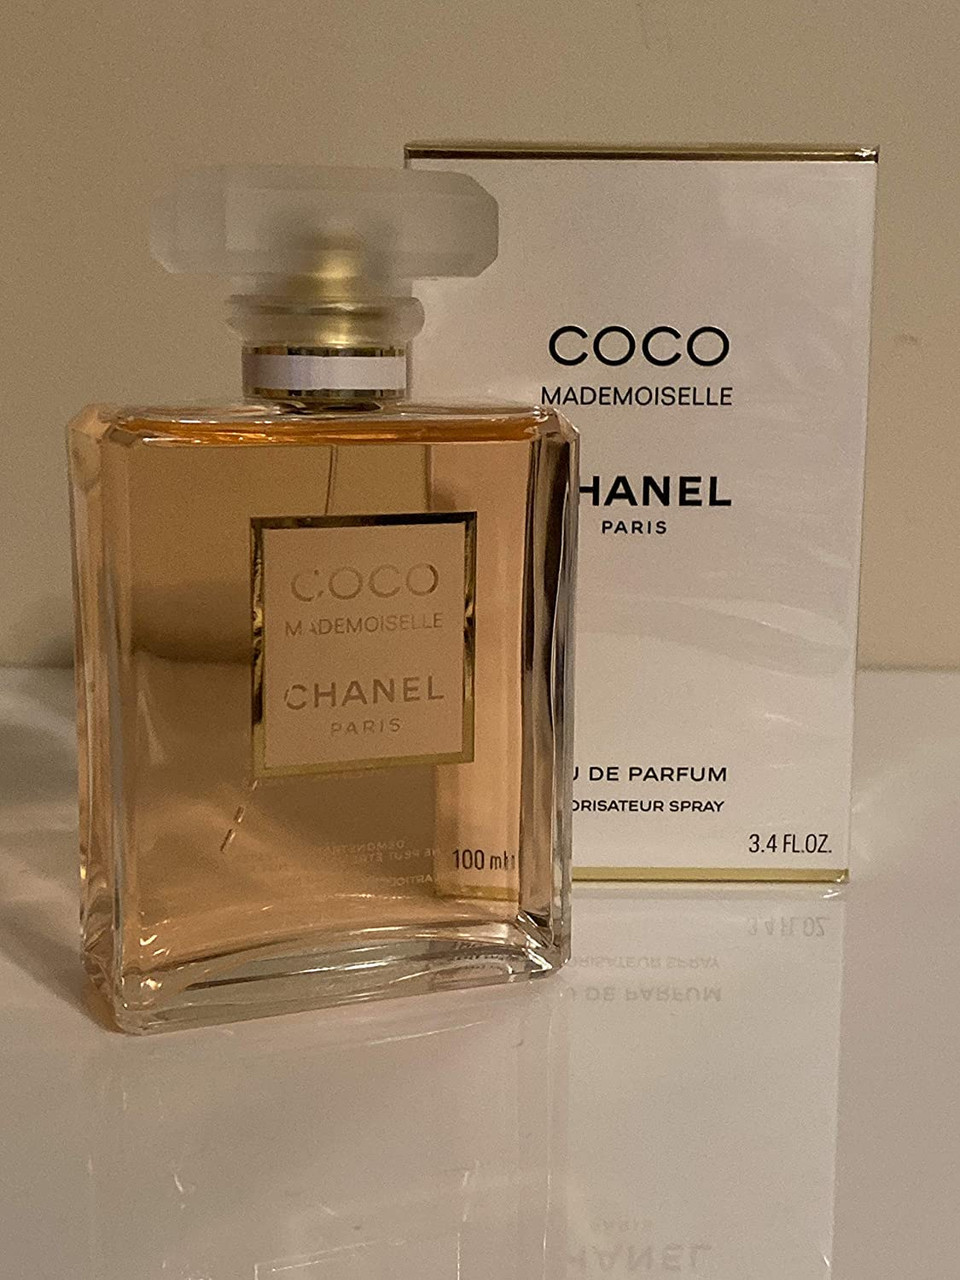 COCO MADEMOISELLE by Chanel Eau De Parfum Spray 3.4 oz / 100 ml